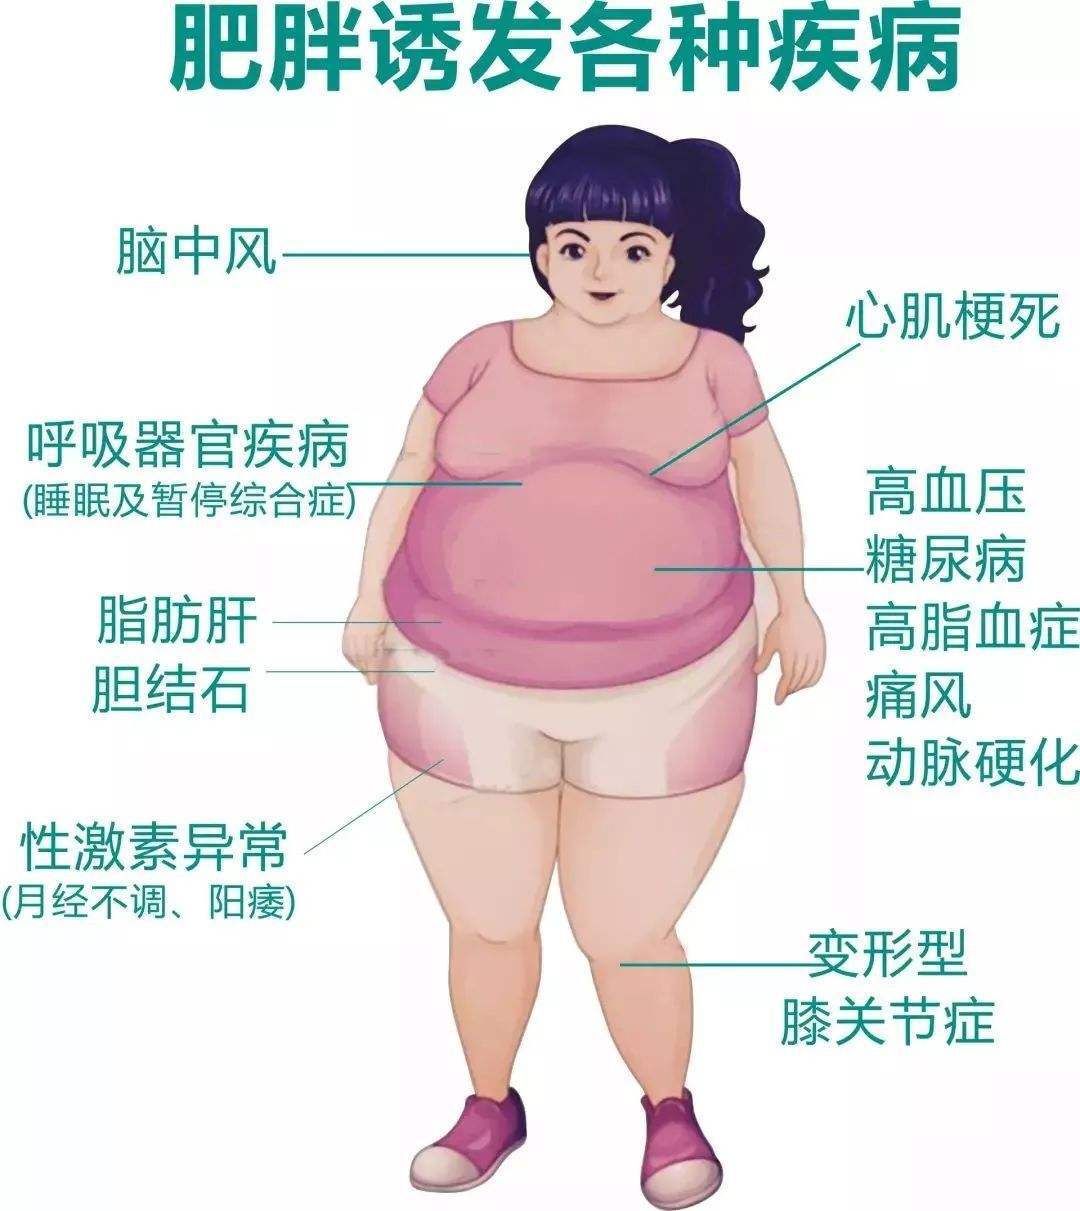 肥胖的危害原图图片